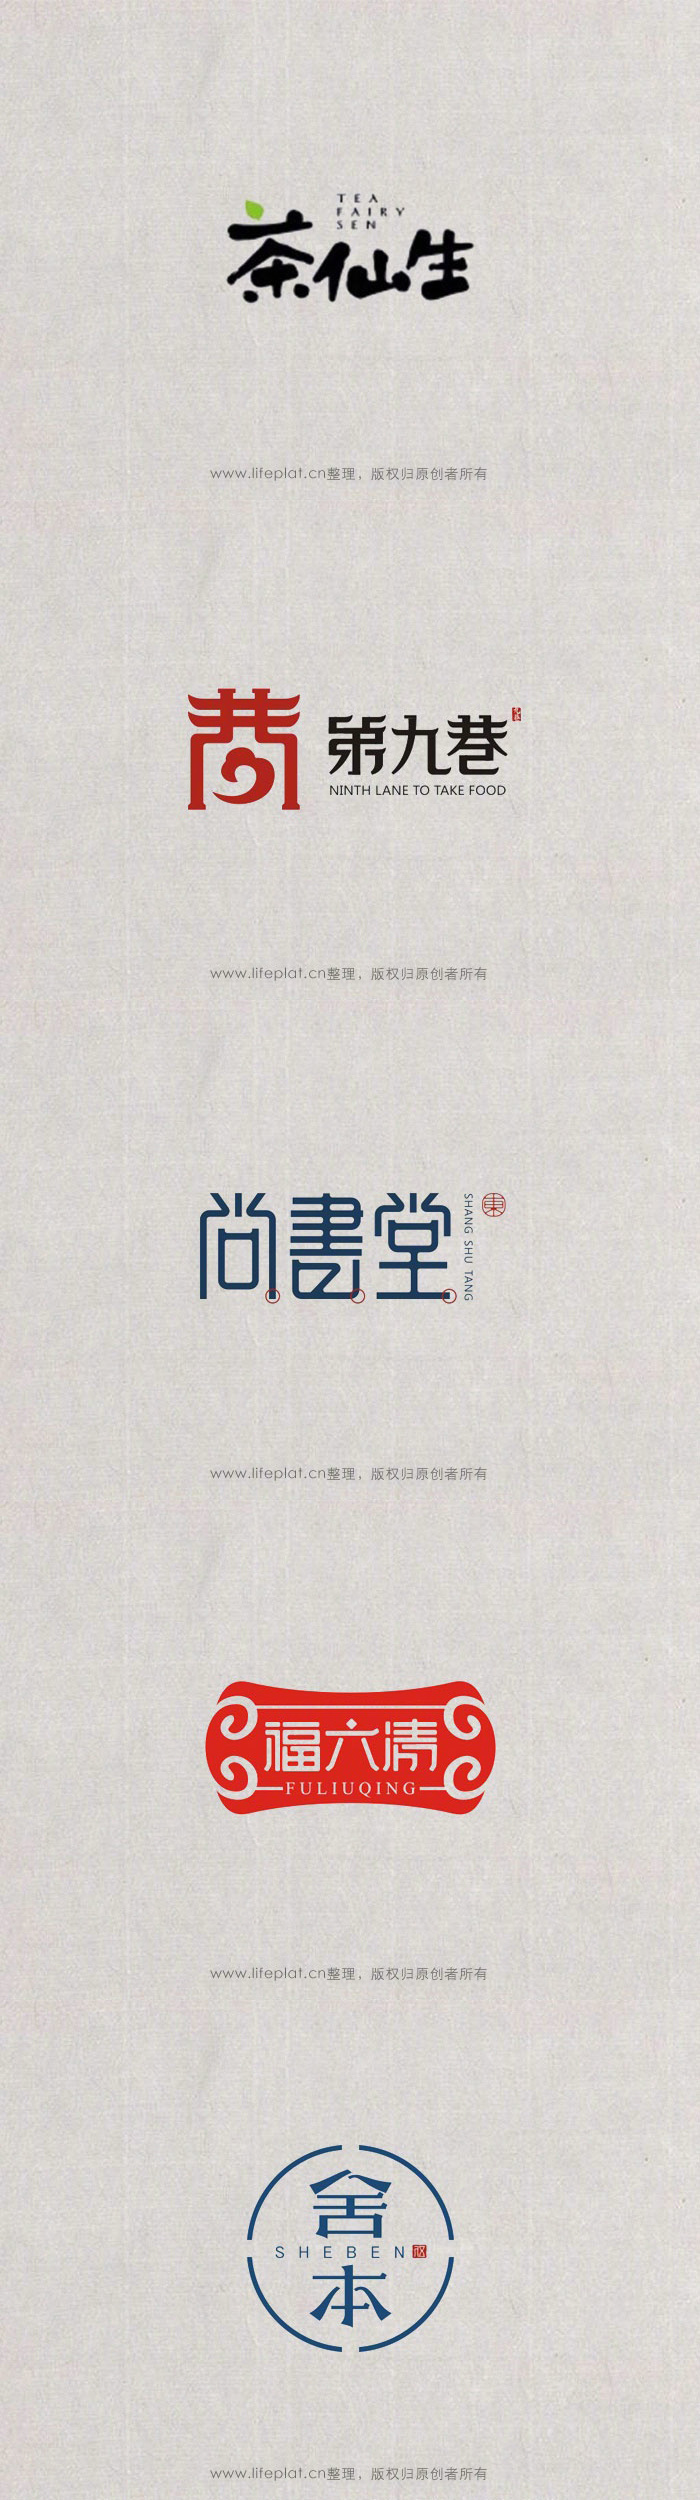 优秀中国风logo设计合辑,来源见水印.